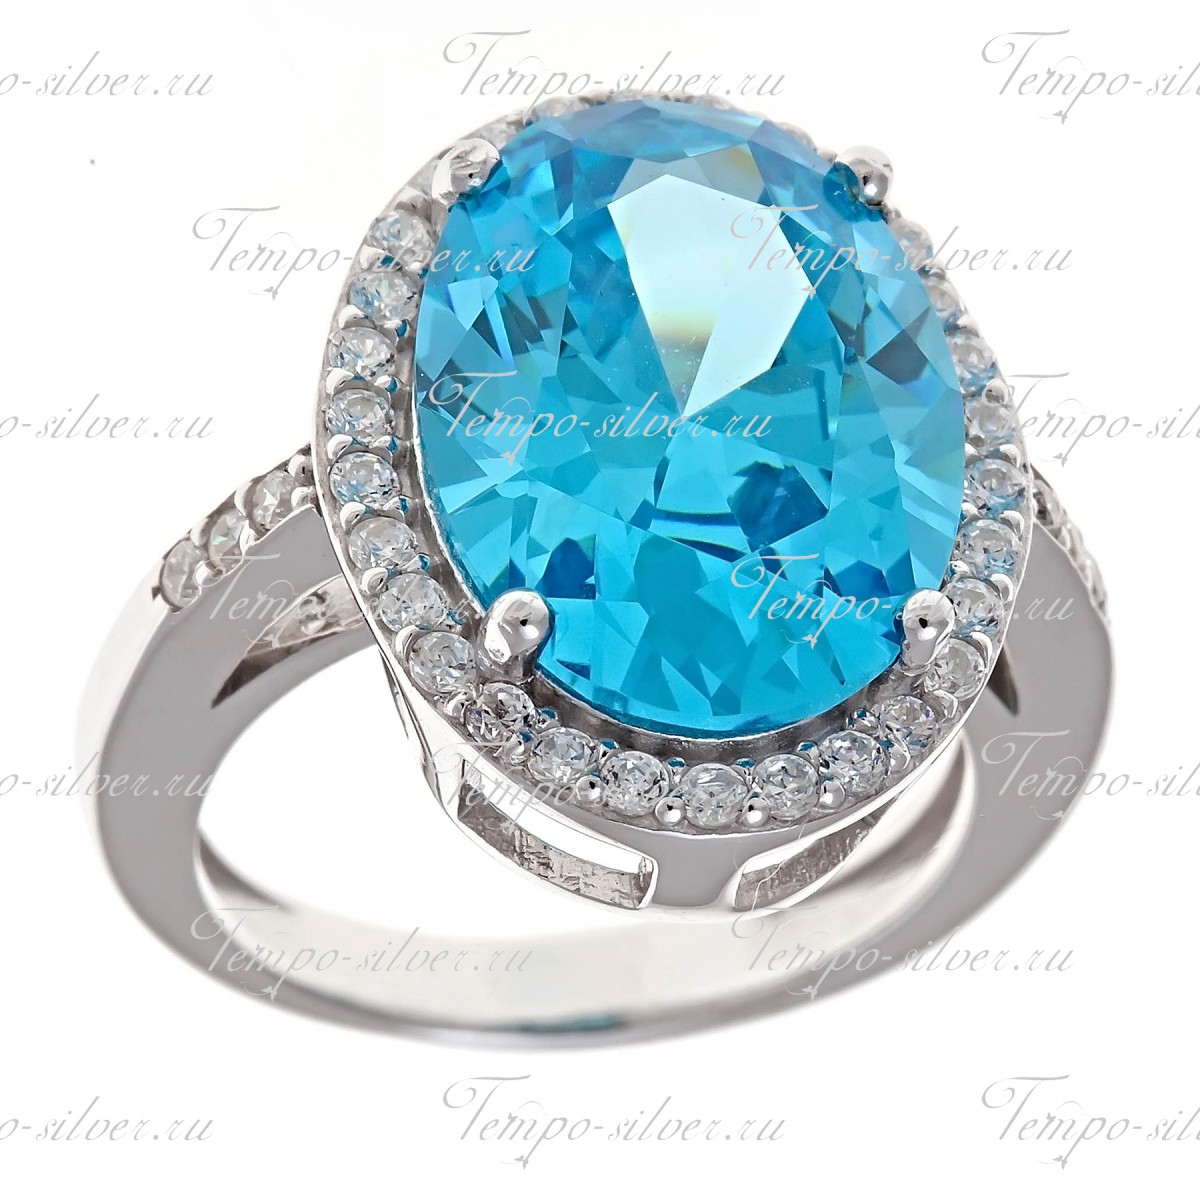 Кольцо из серебра с крупным голубым камнем овальной формы, окруженный россыпью белых камней